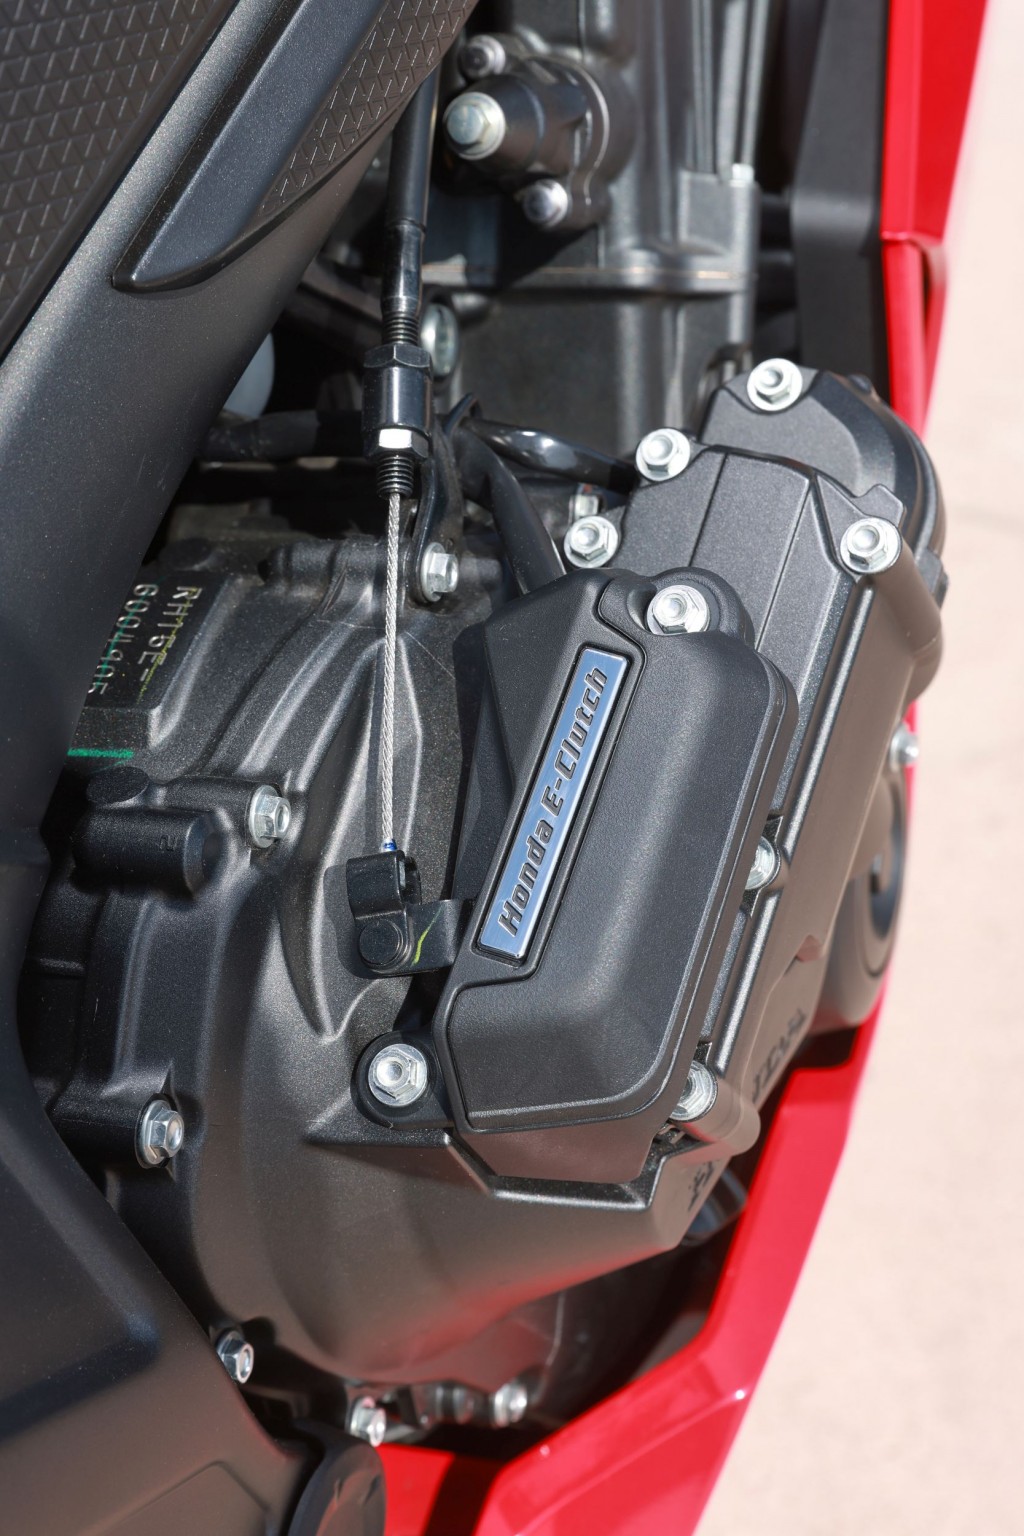 Test elektronske kvačila Honda CBR650R 2024

Honda je nedavno predstavila novu verziju svog popularnog motocikla CBR650R, koji sada dolazi sa elektronskim kvačilom, poznatim kao E-Clutch. Ova inovacija obećava da će olakšati vožnju omogućavajući vozačima da menjaju brzine bez potrebe za ručnim korišćenjem kvačila. 

Elektronsko kvačilo funkcioniše tako što automatski reguliše pritisak potreban za aktiviranje kvačila, što omogućava glatke promene brzina bez prekida u isporuci snage. Ovo je posebno korisno pri vožnji u gradu, gde česte promene brzina mogu biti naporne i otežavaju koncentraciju na saobraćaj.

Testiranje ovog sistema pokazalo je da E-Clutch ne samo da olakšava upravljanje motociklom, već i povećava sigurnost vožnje. Vozači mogu da se fokusiraju na okolinu bez brige o mehaničkim aspektima vožnje, što je posebno važno za manje iskusne vozače.

Honda CBR650R sa elektronskim kvačilom biće dostupna na tržištu od 2024. godine i očekuje se da će privući veliki broj kupaca, kako iskusnih tako i onih koji tek ulaze u svet motociklizma. Ovaj model predstavlja značajan korak napred u tehnologiji motocikala i potencijalno postavlja nove standarde u industriji. - Слика 55